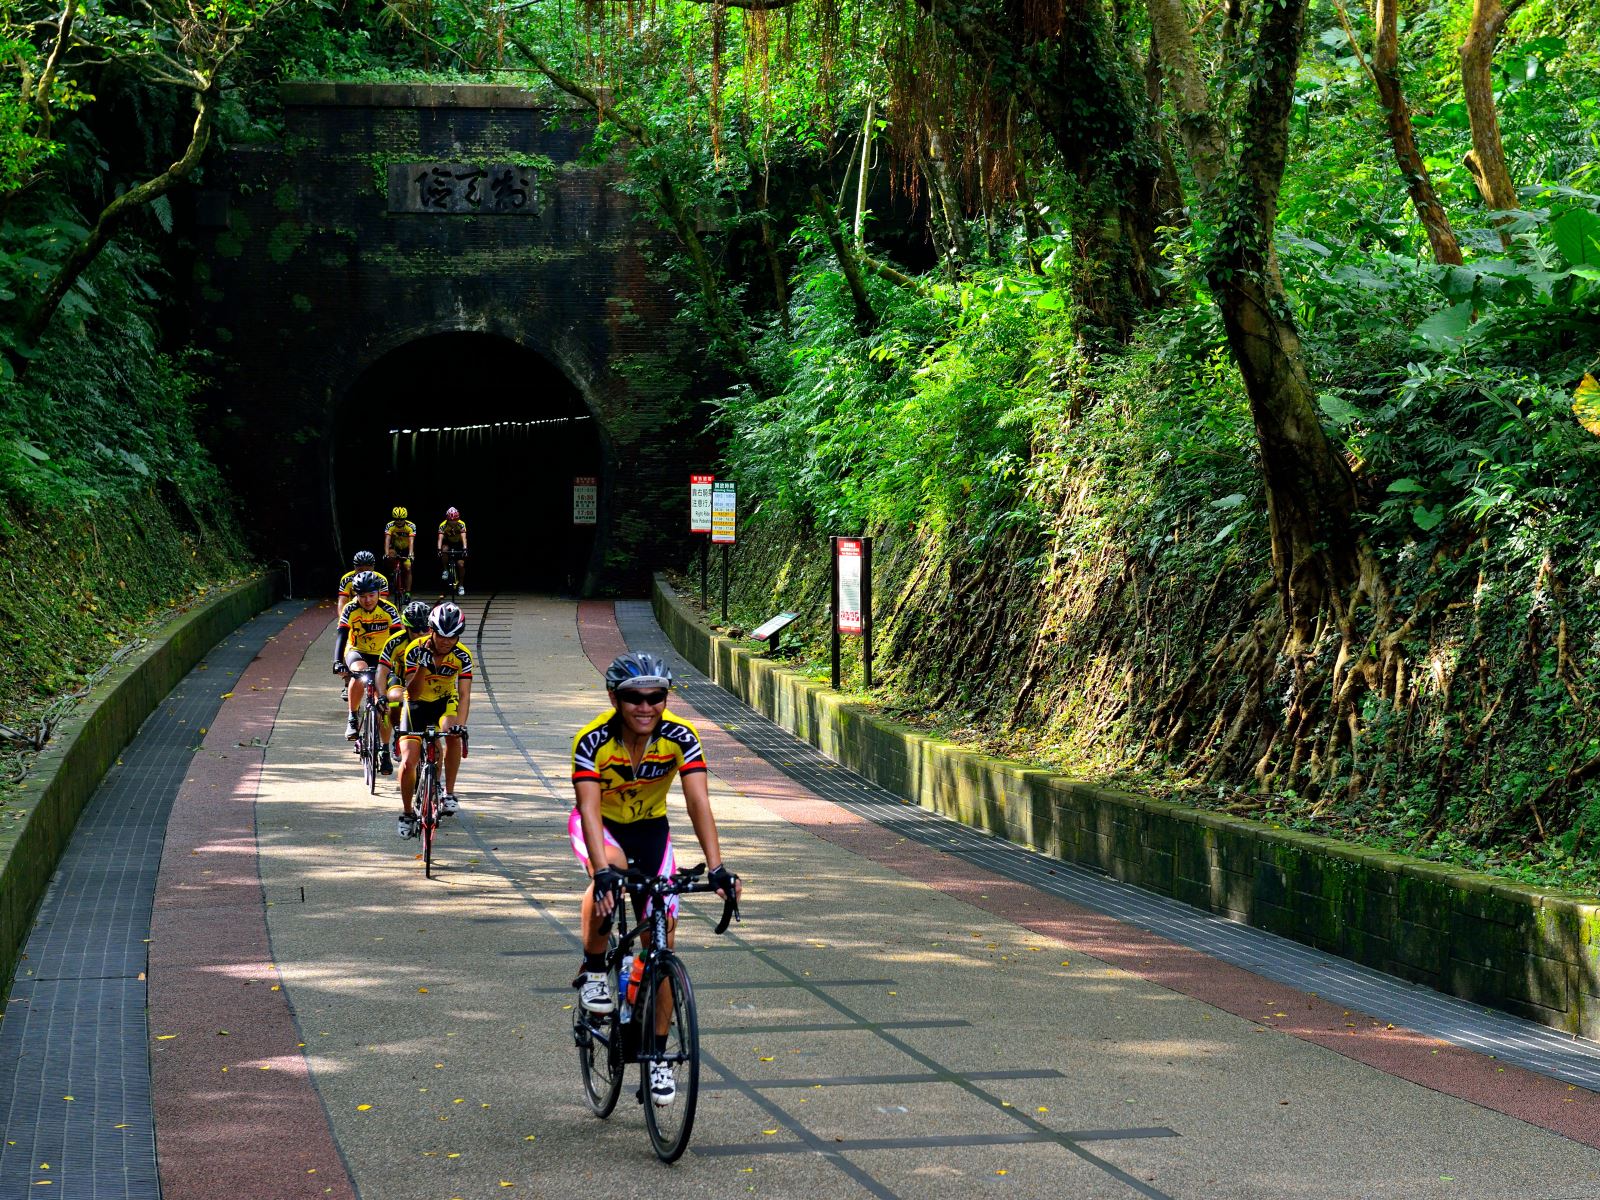 Самая известная часть северо-востока - это обильные ресурсы велосипедного туризма, такие как «Велосипедная дорожка старого туннеля Каолинг», которая была перестроена из первого железнодорожного туннеля Тайваня.